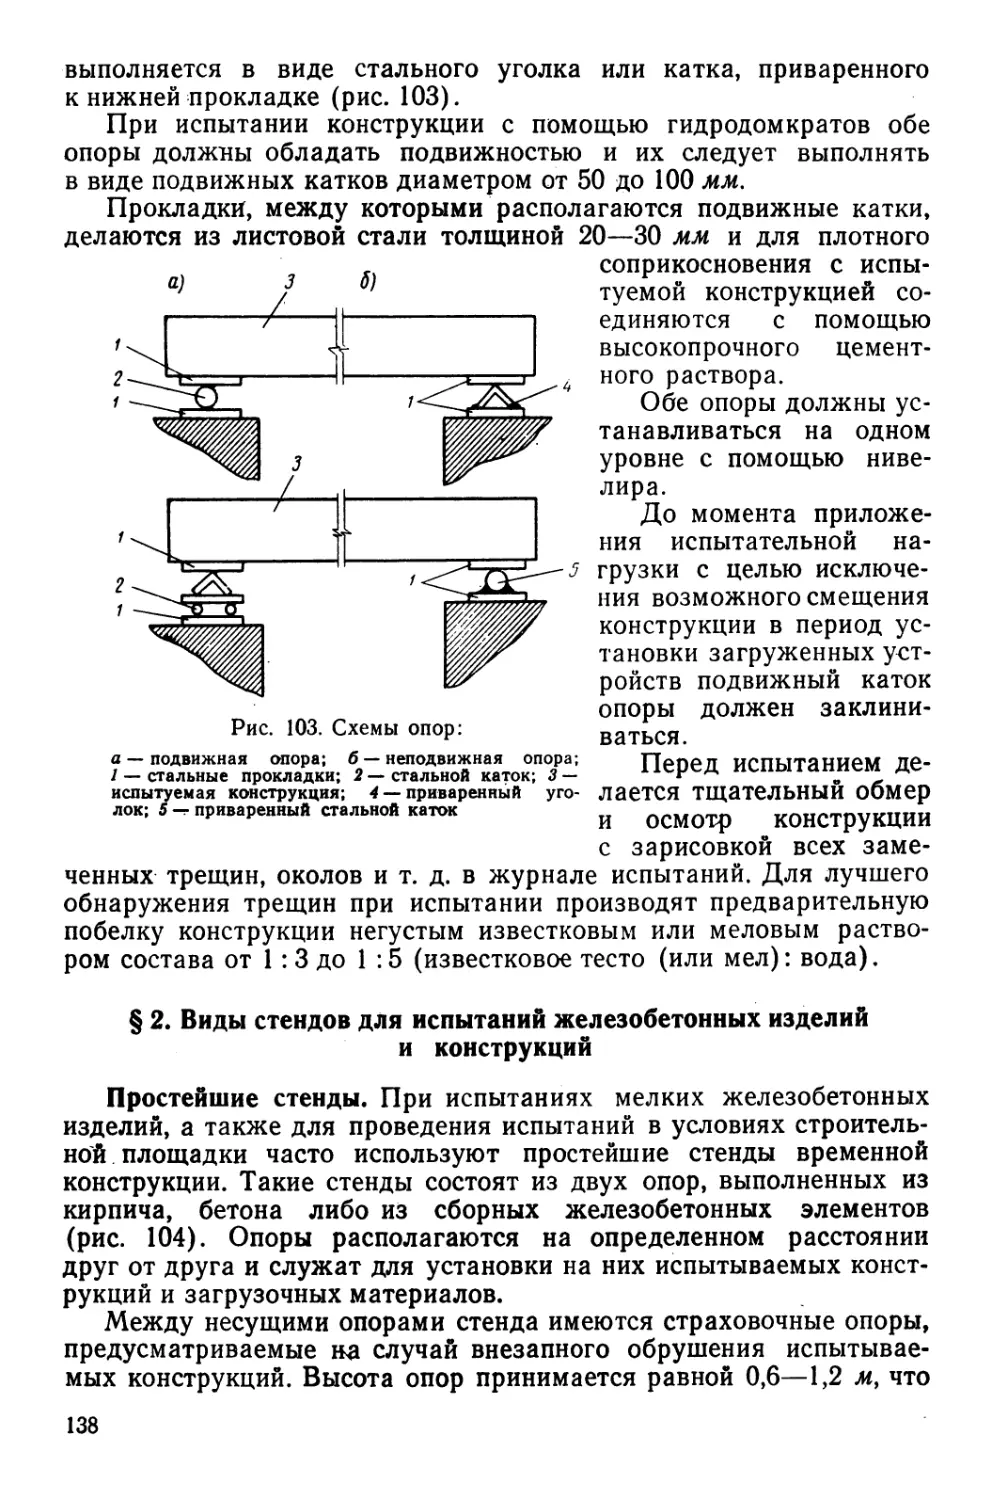 § 2. Виды стендов для испытаний железобетонных изделий и конструкций